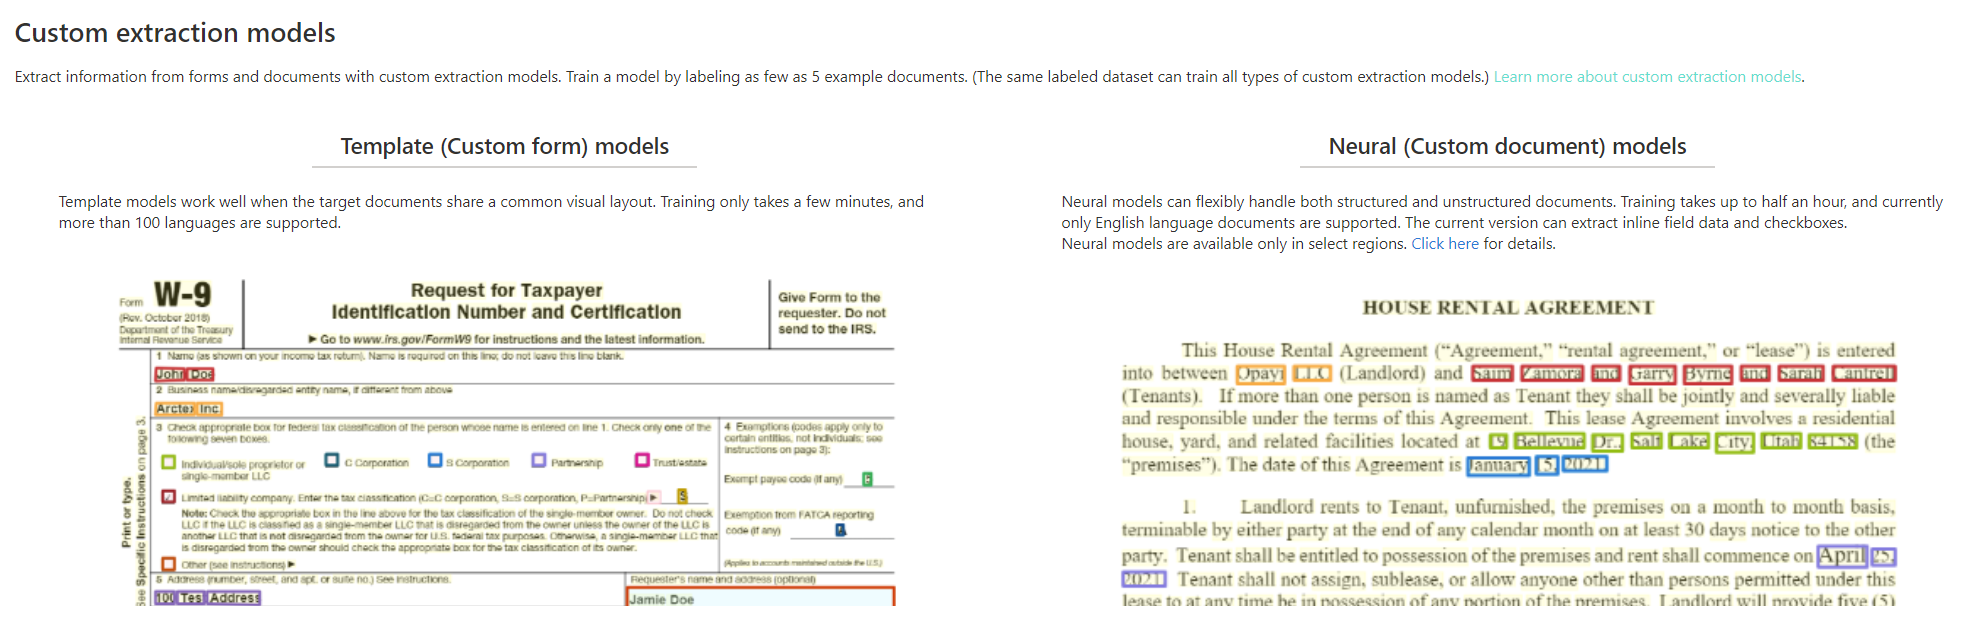 لقطة شاشة لتحليل نموذج الاستخراج المخصص في Document Intelligence Studio.